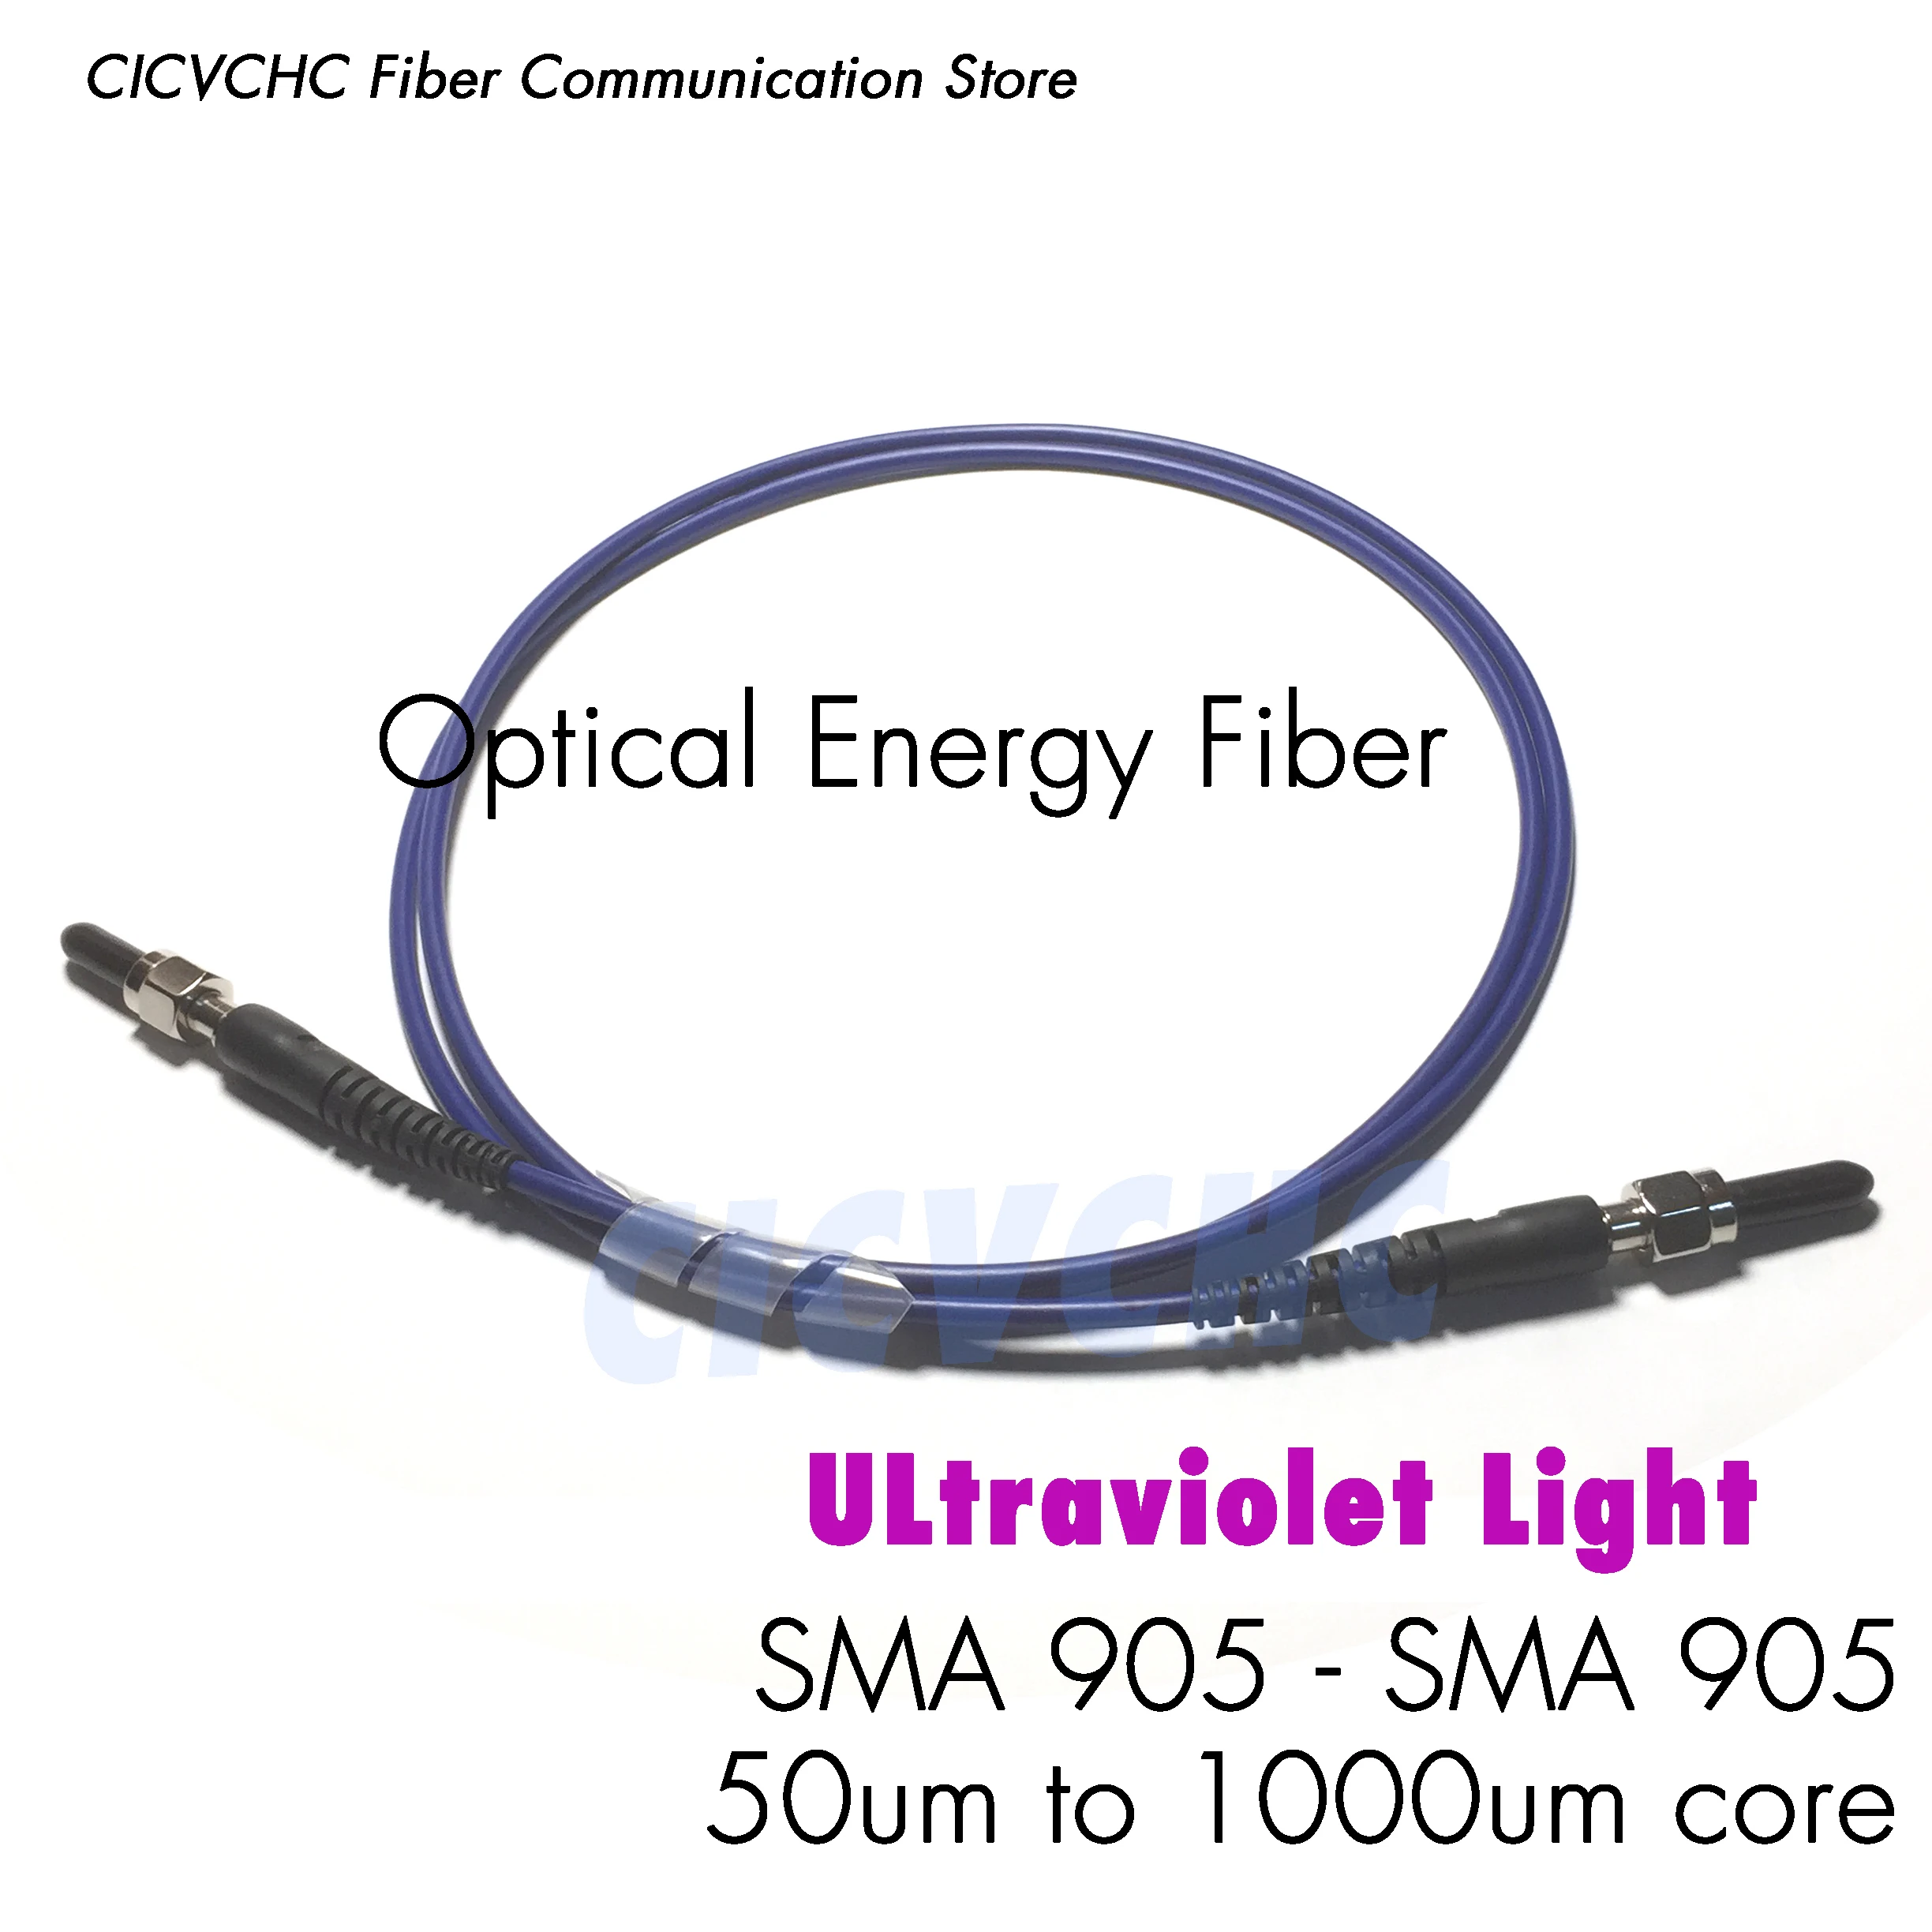 SMA905-SMA905 energy fiber optic patch cord jumper with 50um to 1000um core for Ultraviolet Light